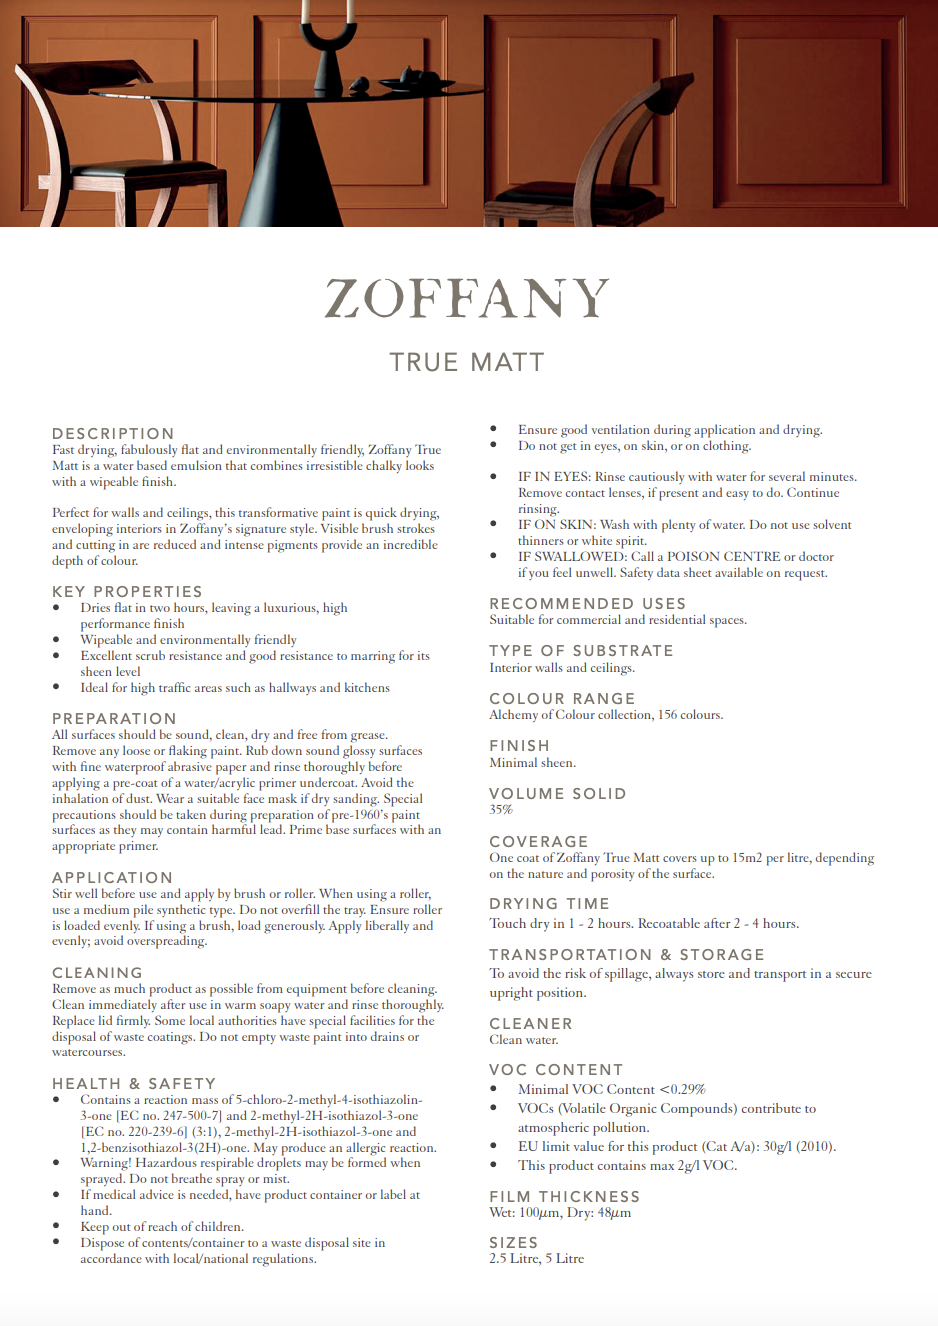 Zoffany Latte True Matt Emulsion